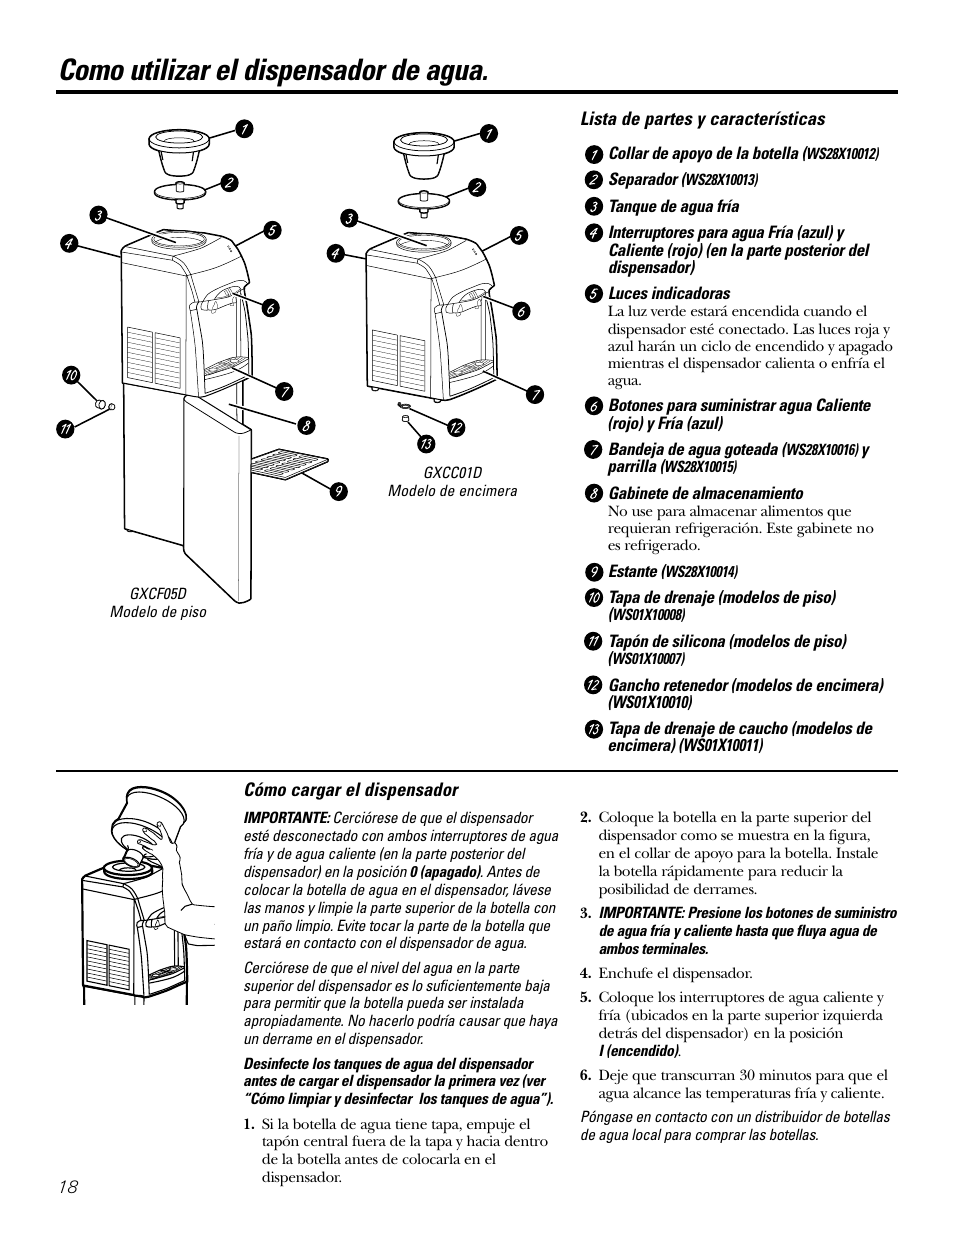 Cómo cargar el dispensador, Lista de partes y características, Como  utilizar el dispensador de agua | GE GXCF05D User Manual | Page 18 / 24 |  Original mode